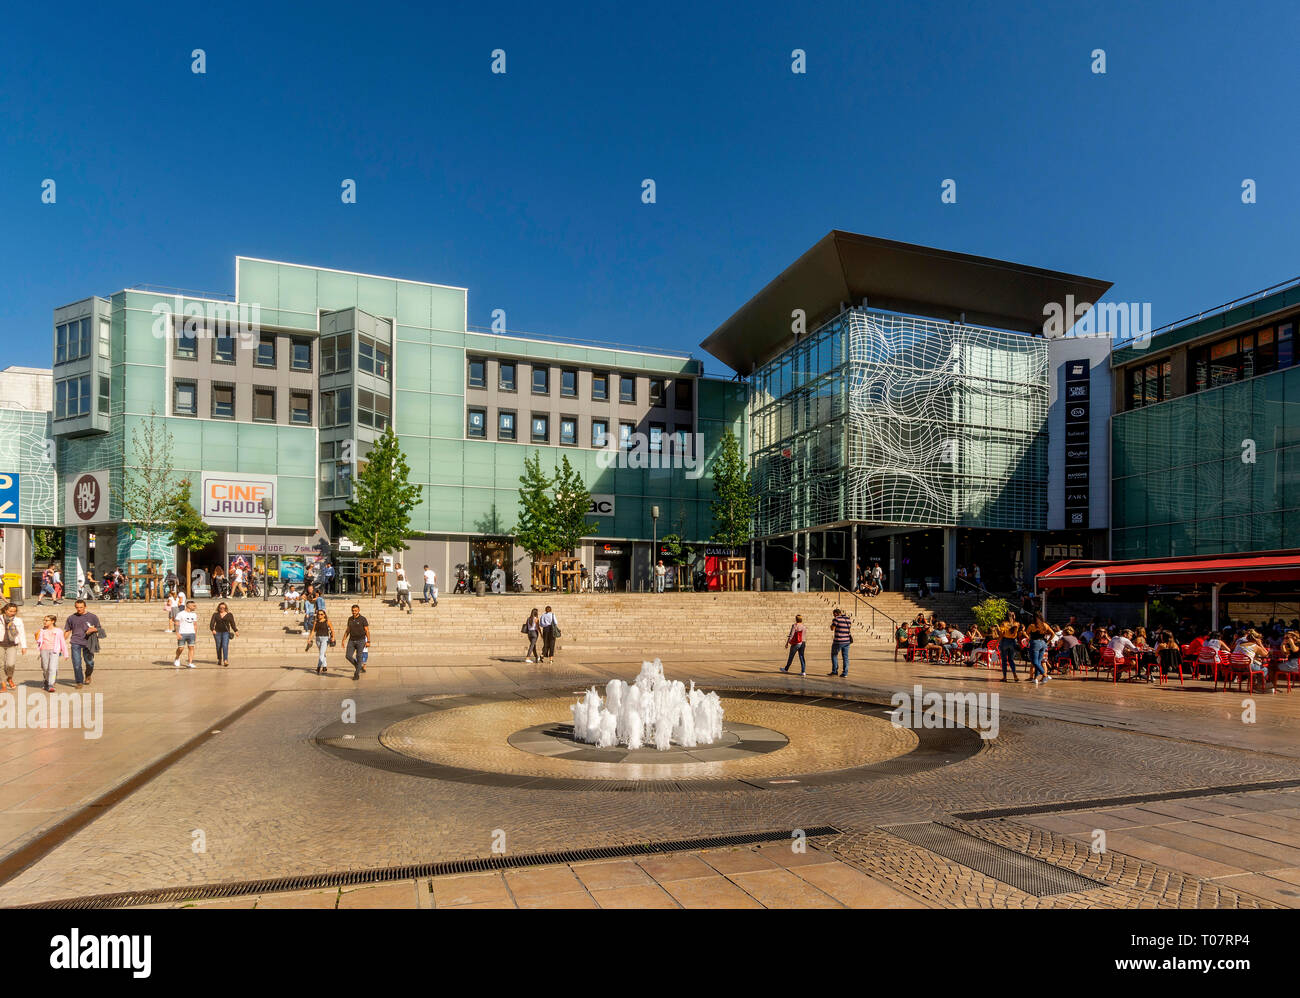 Centre Jaude shopping centre, Place de Jaude. Clermont-ferrand. Puy de  dome. Auvergne. France Stock Photo - Alamy